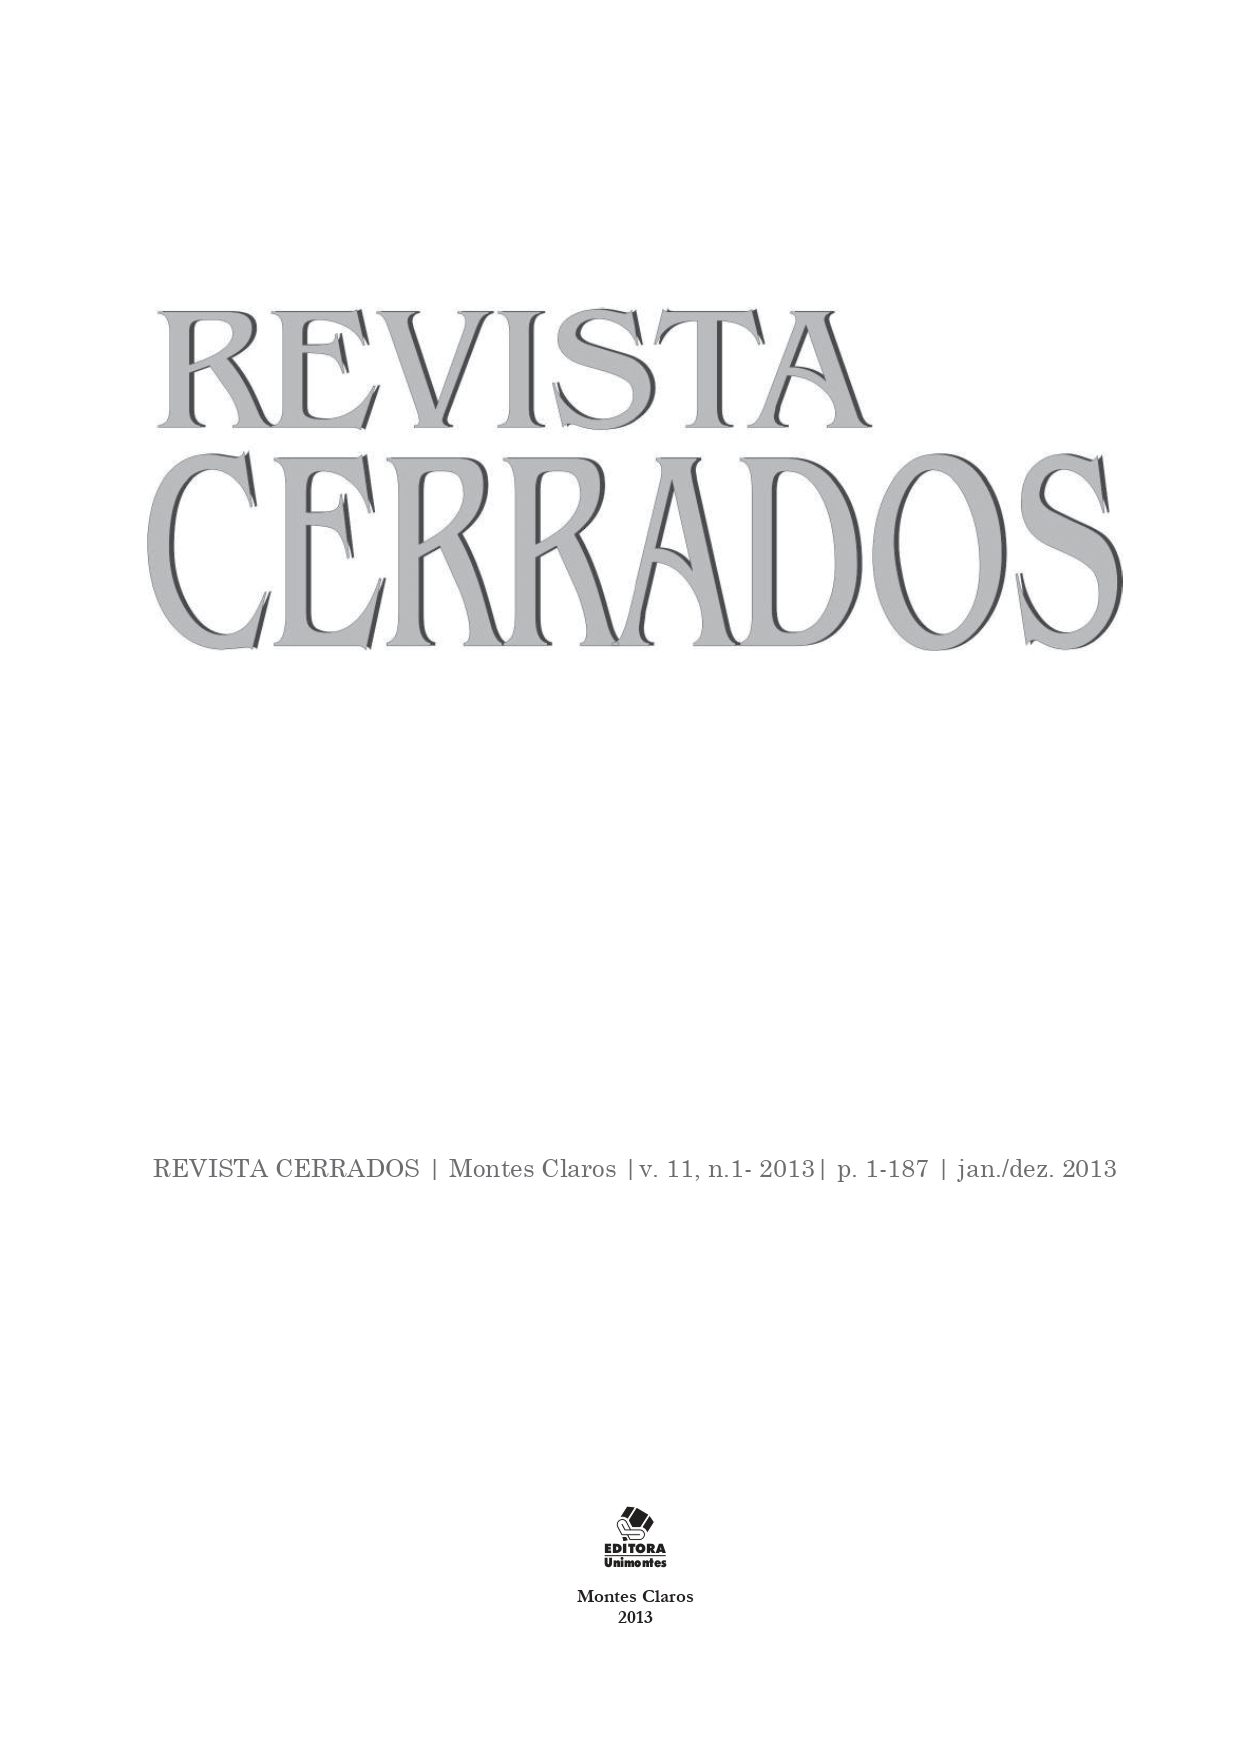 					Visualizar v. 11 n. 01 (2013): Revista Cerrados (versão impressa)
				